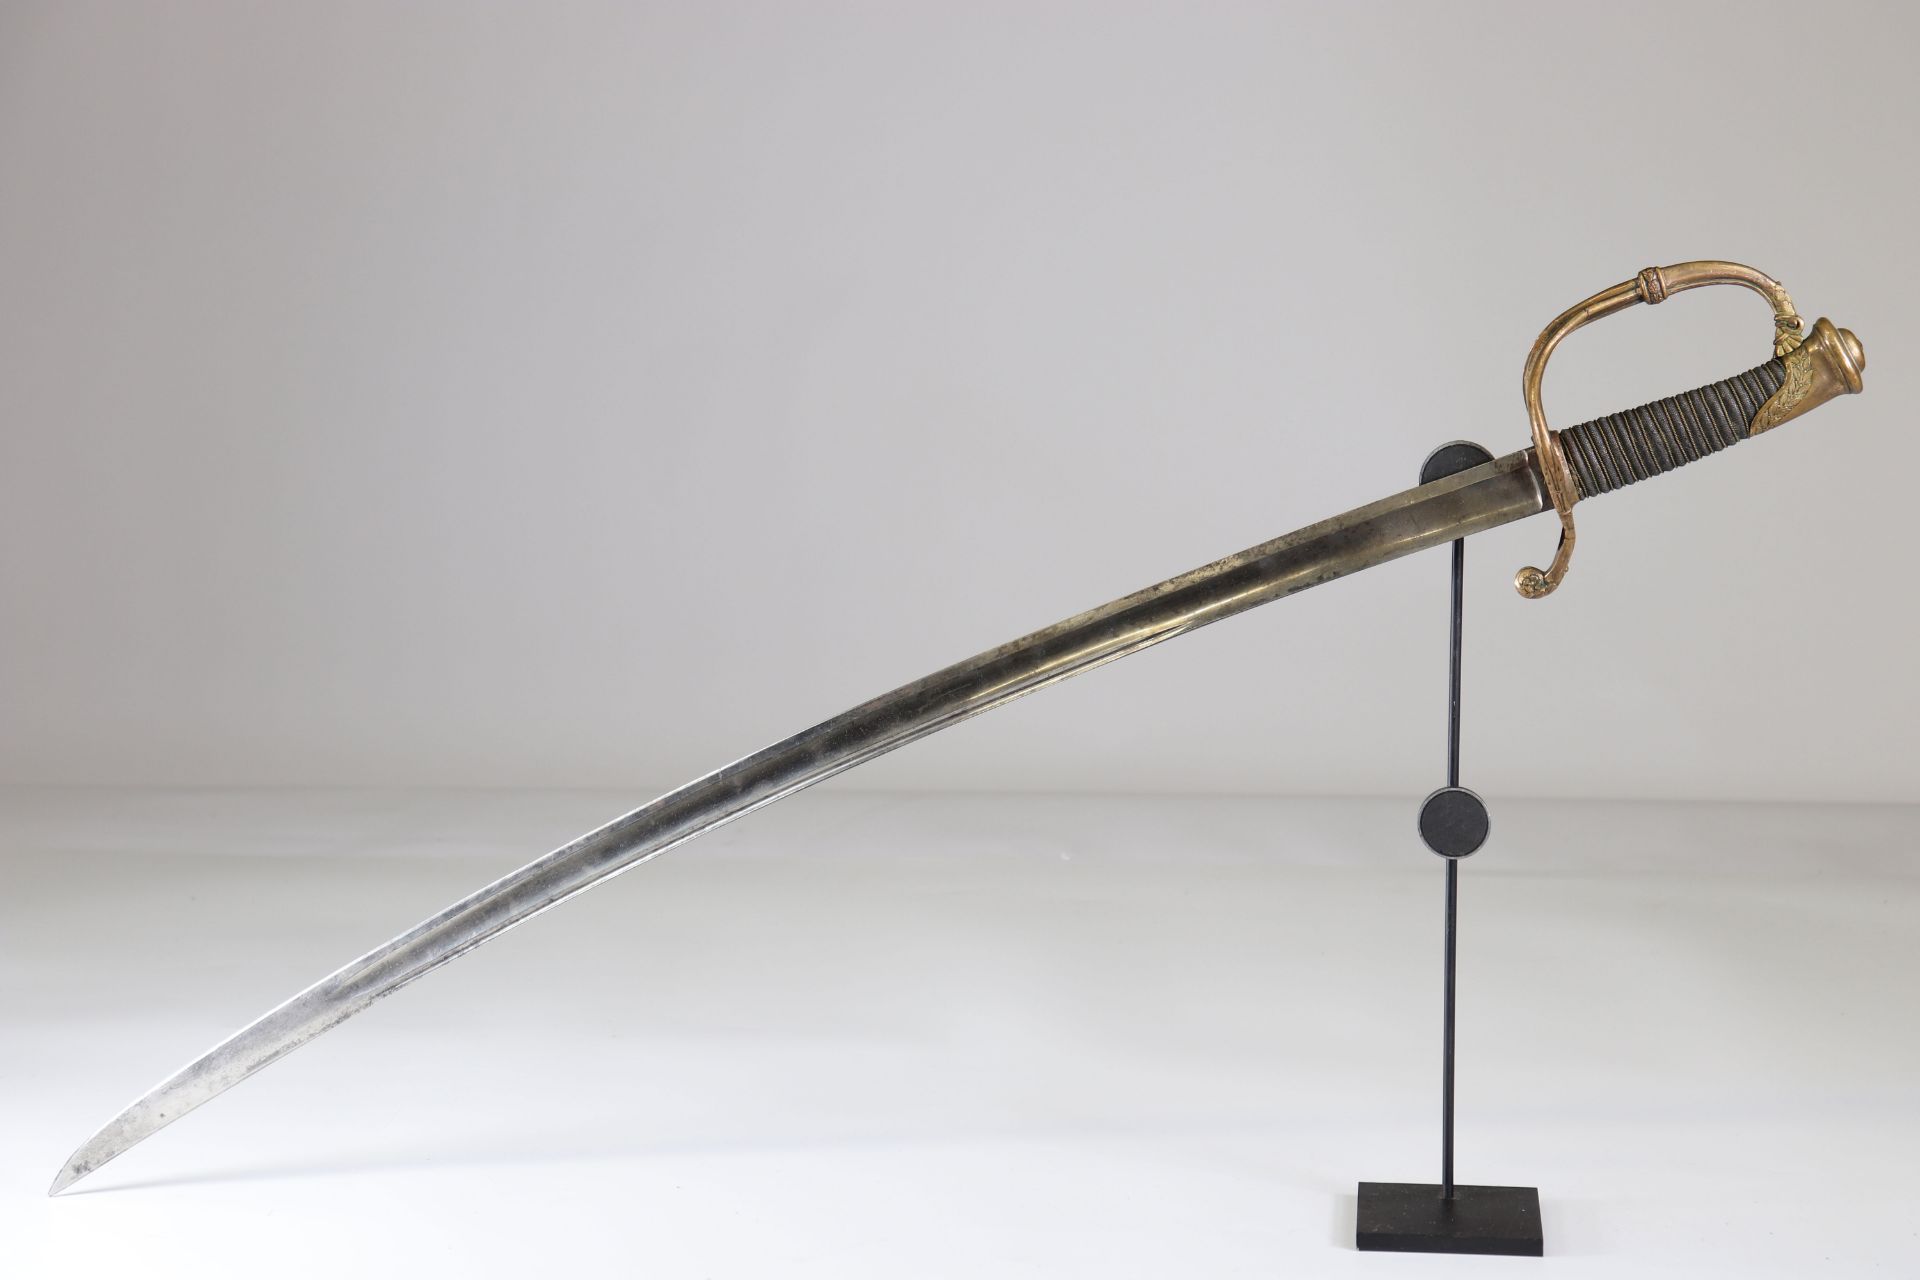 French officer saber, Klingenthal, 1834 - Image 2 of 5